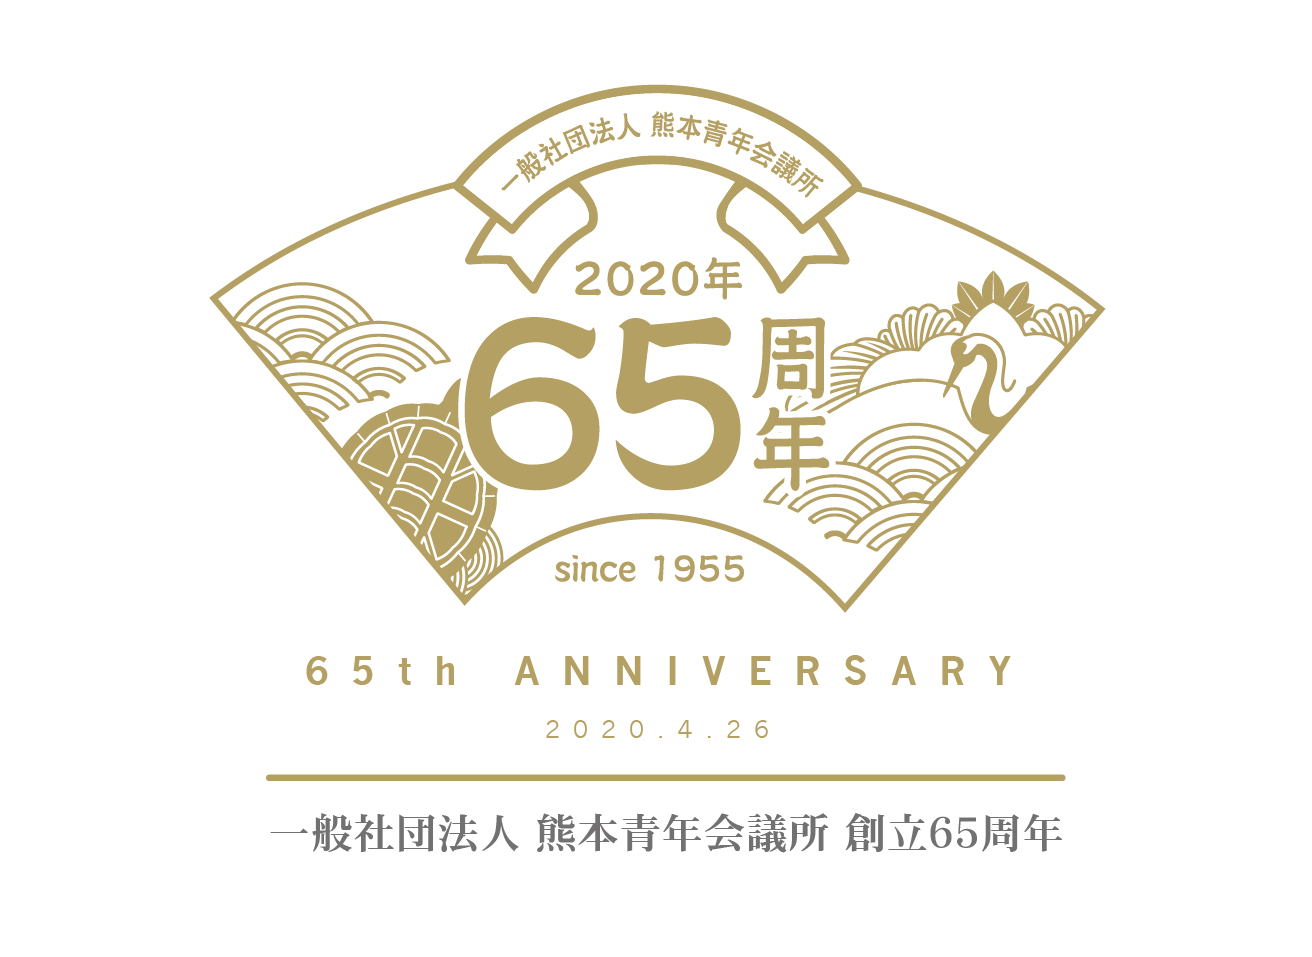 一般社団法人 熊本青年会議所 創立65周年記念式典 パーティ延期のお知らせ